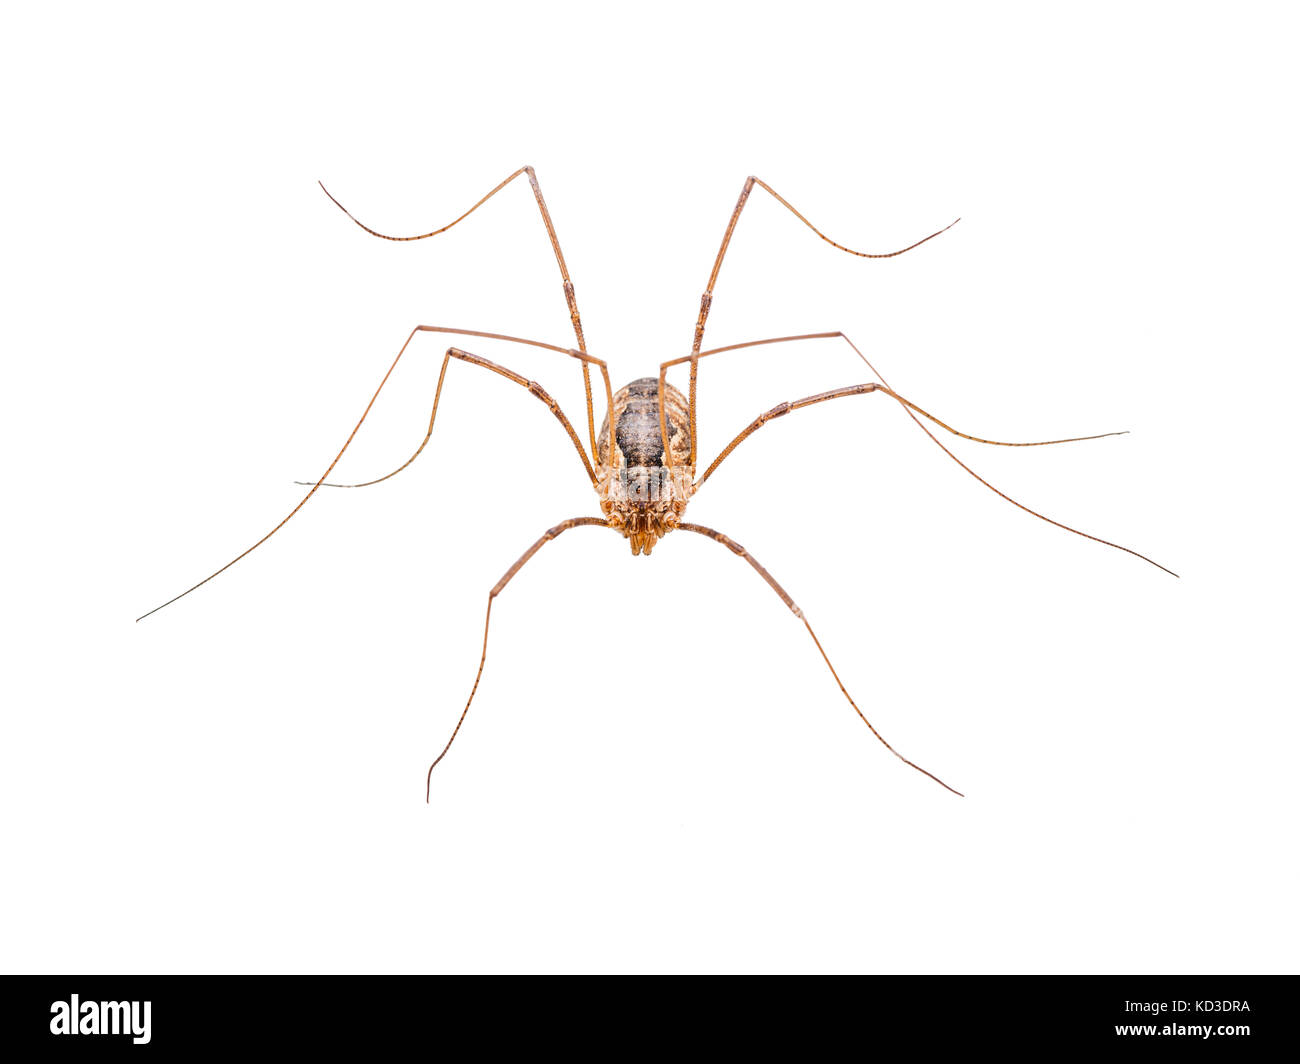 Long-Legged Spider Isolated on White Stock Photo